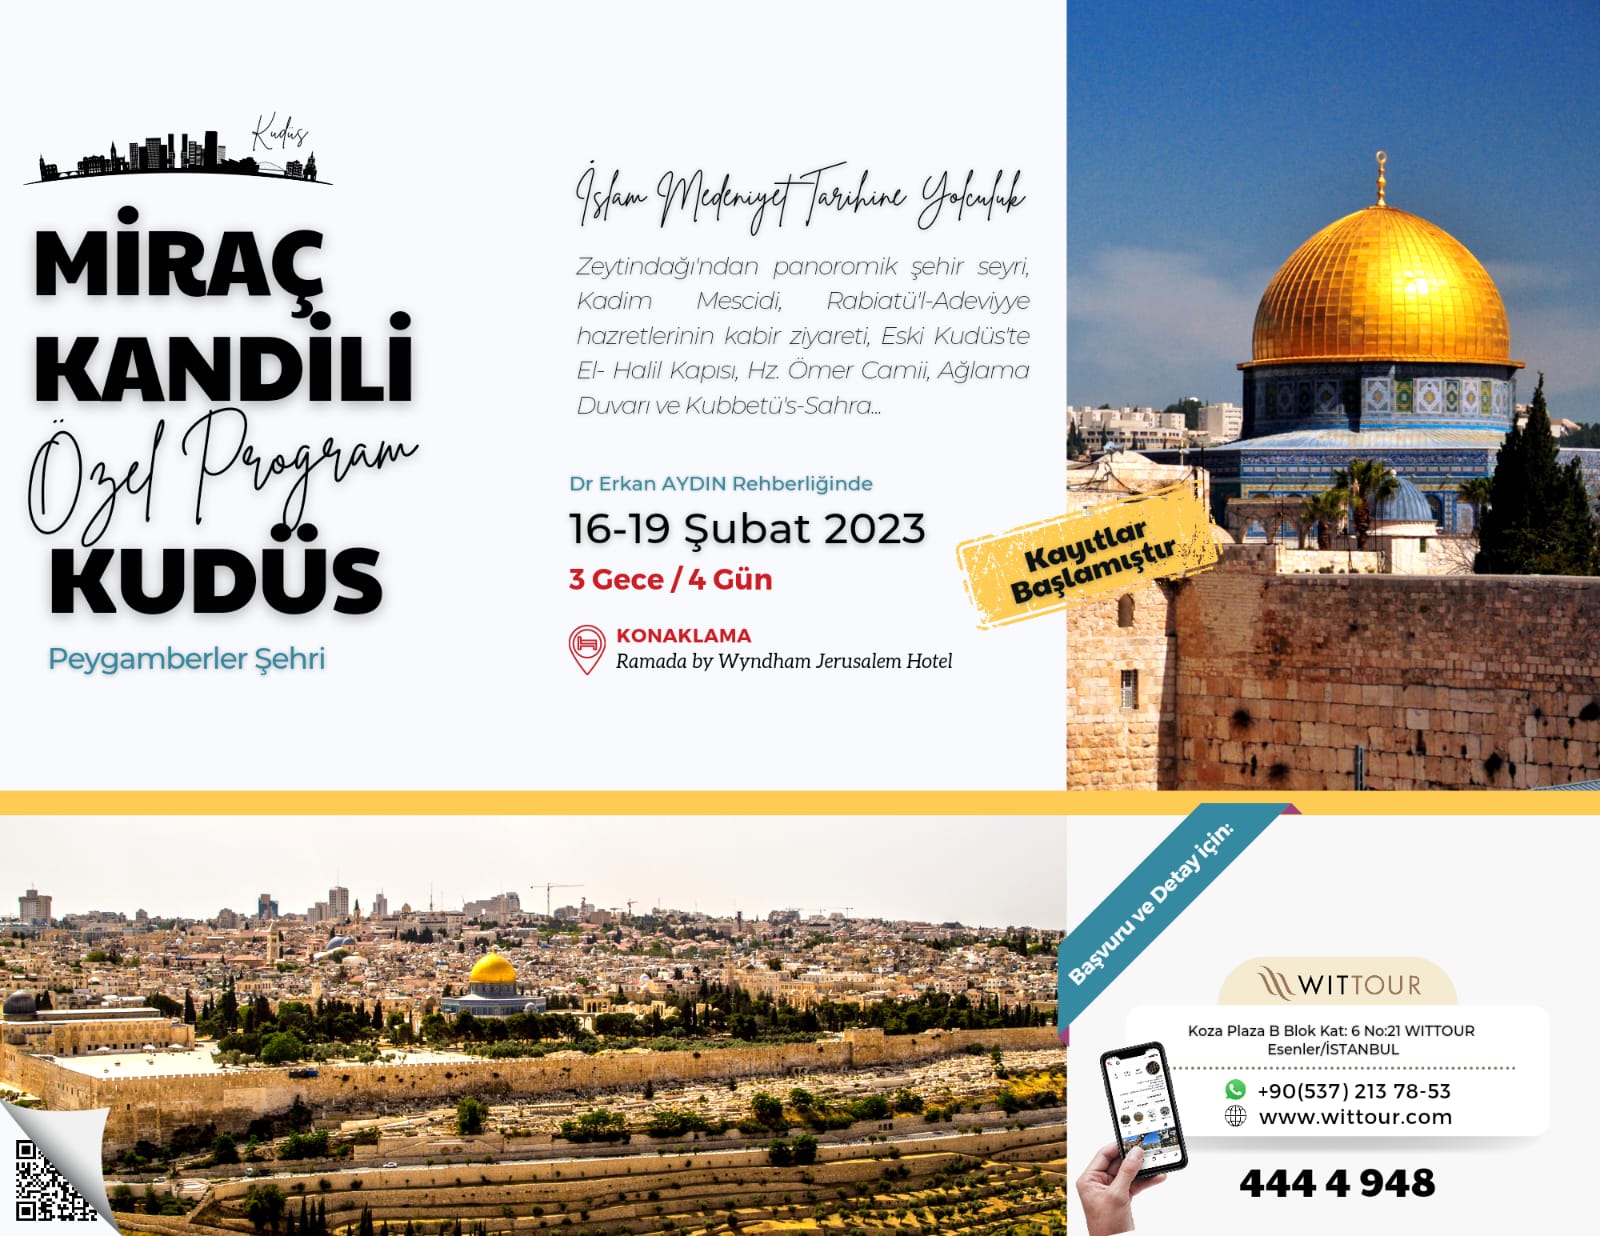 Miraç Kandili Kudüs Programı